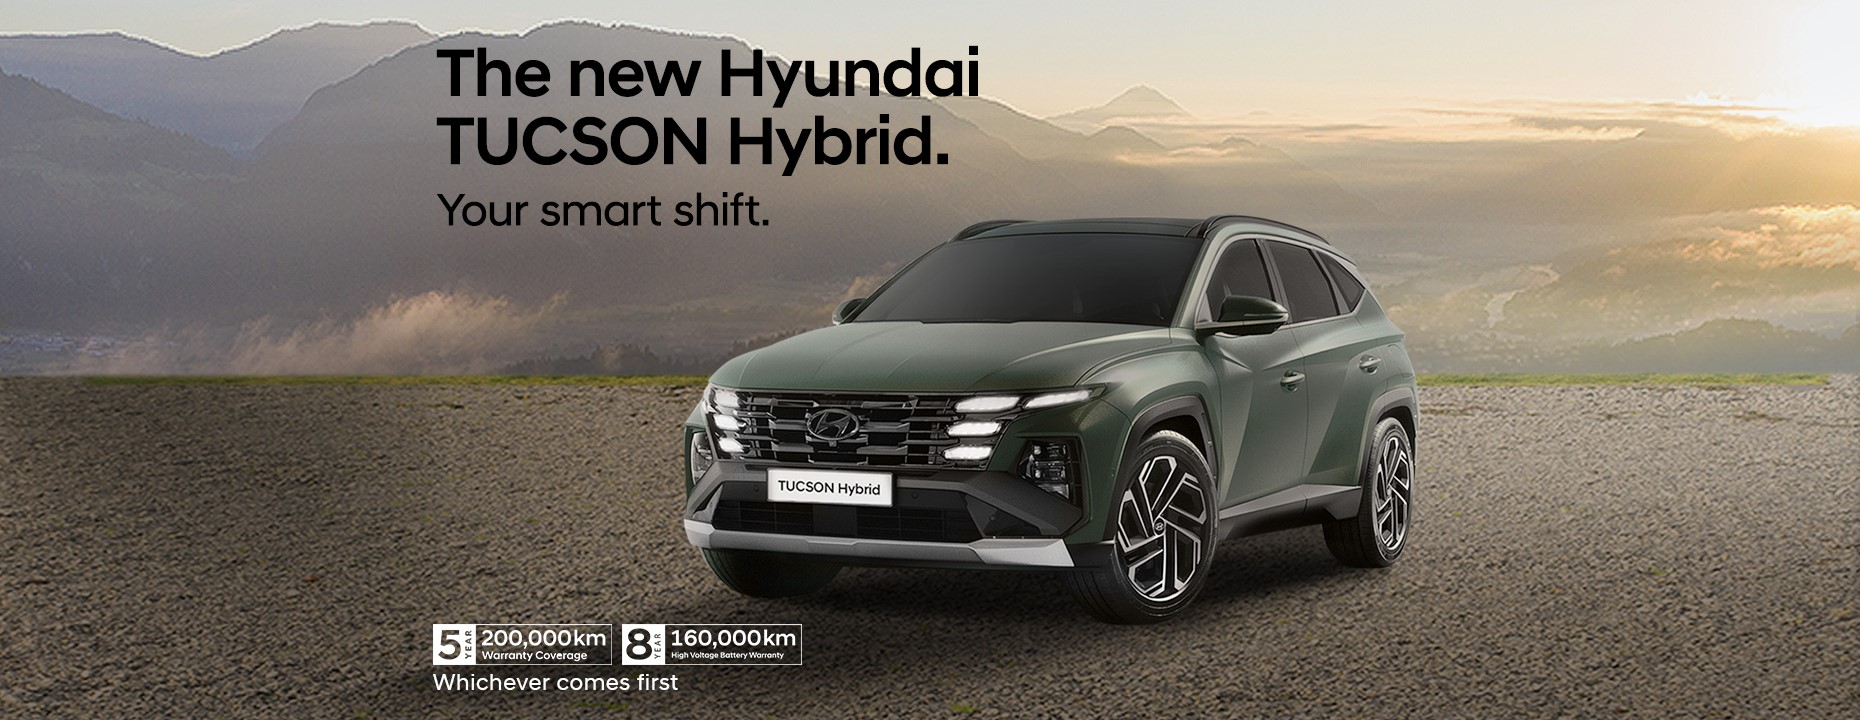 image of the Hyundai tucson hybrid